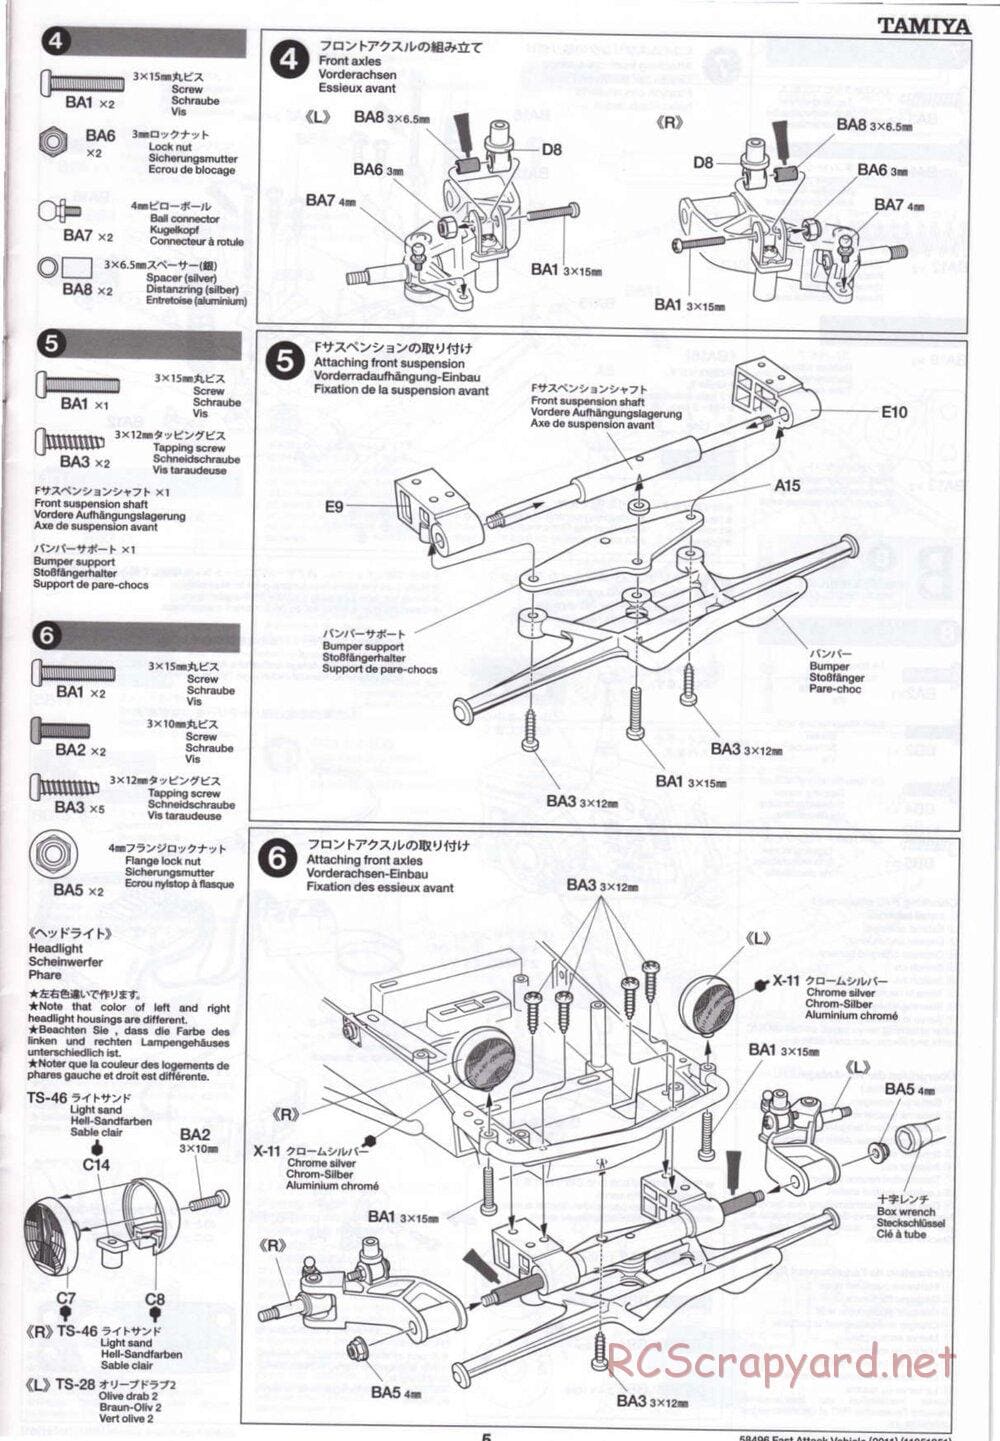 Tamiya - Fast Attack Vehicle 2011 - FAV Chassis - Manual - Page 5